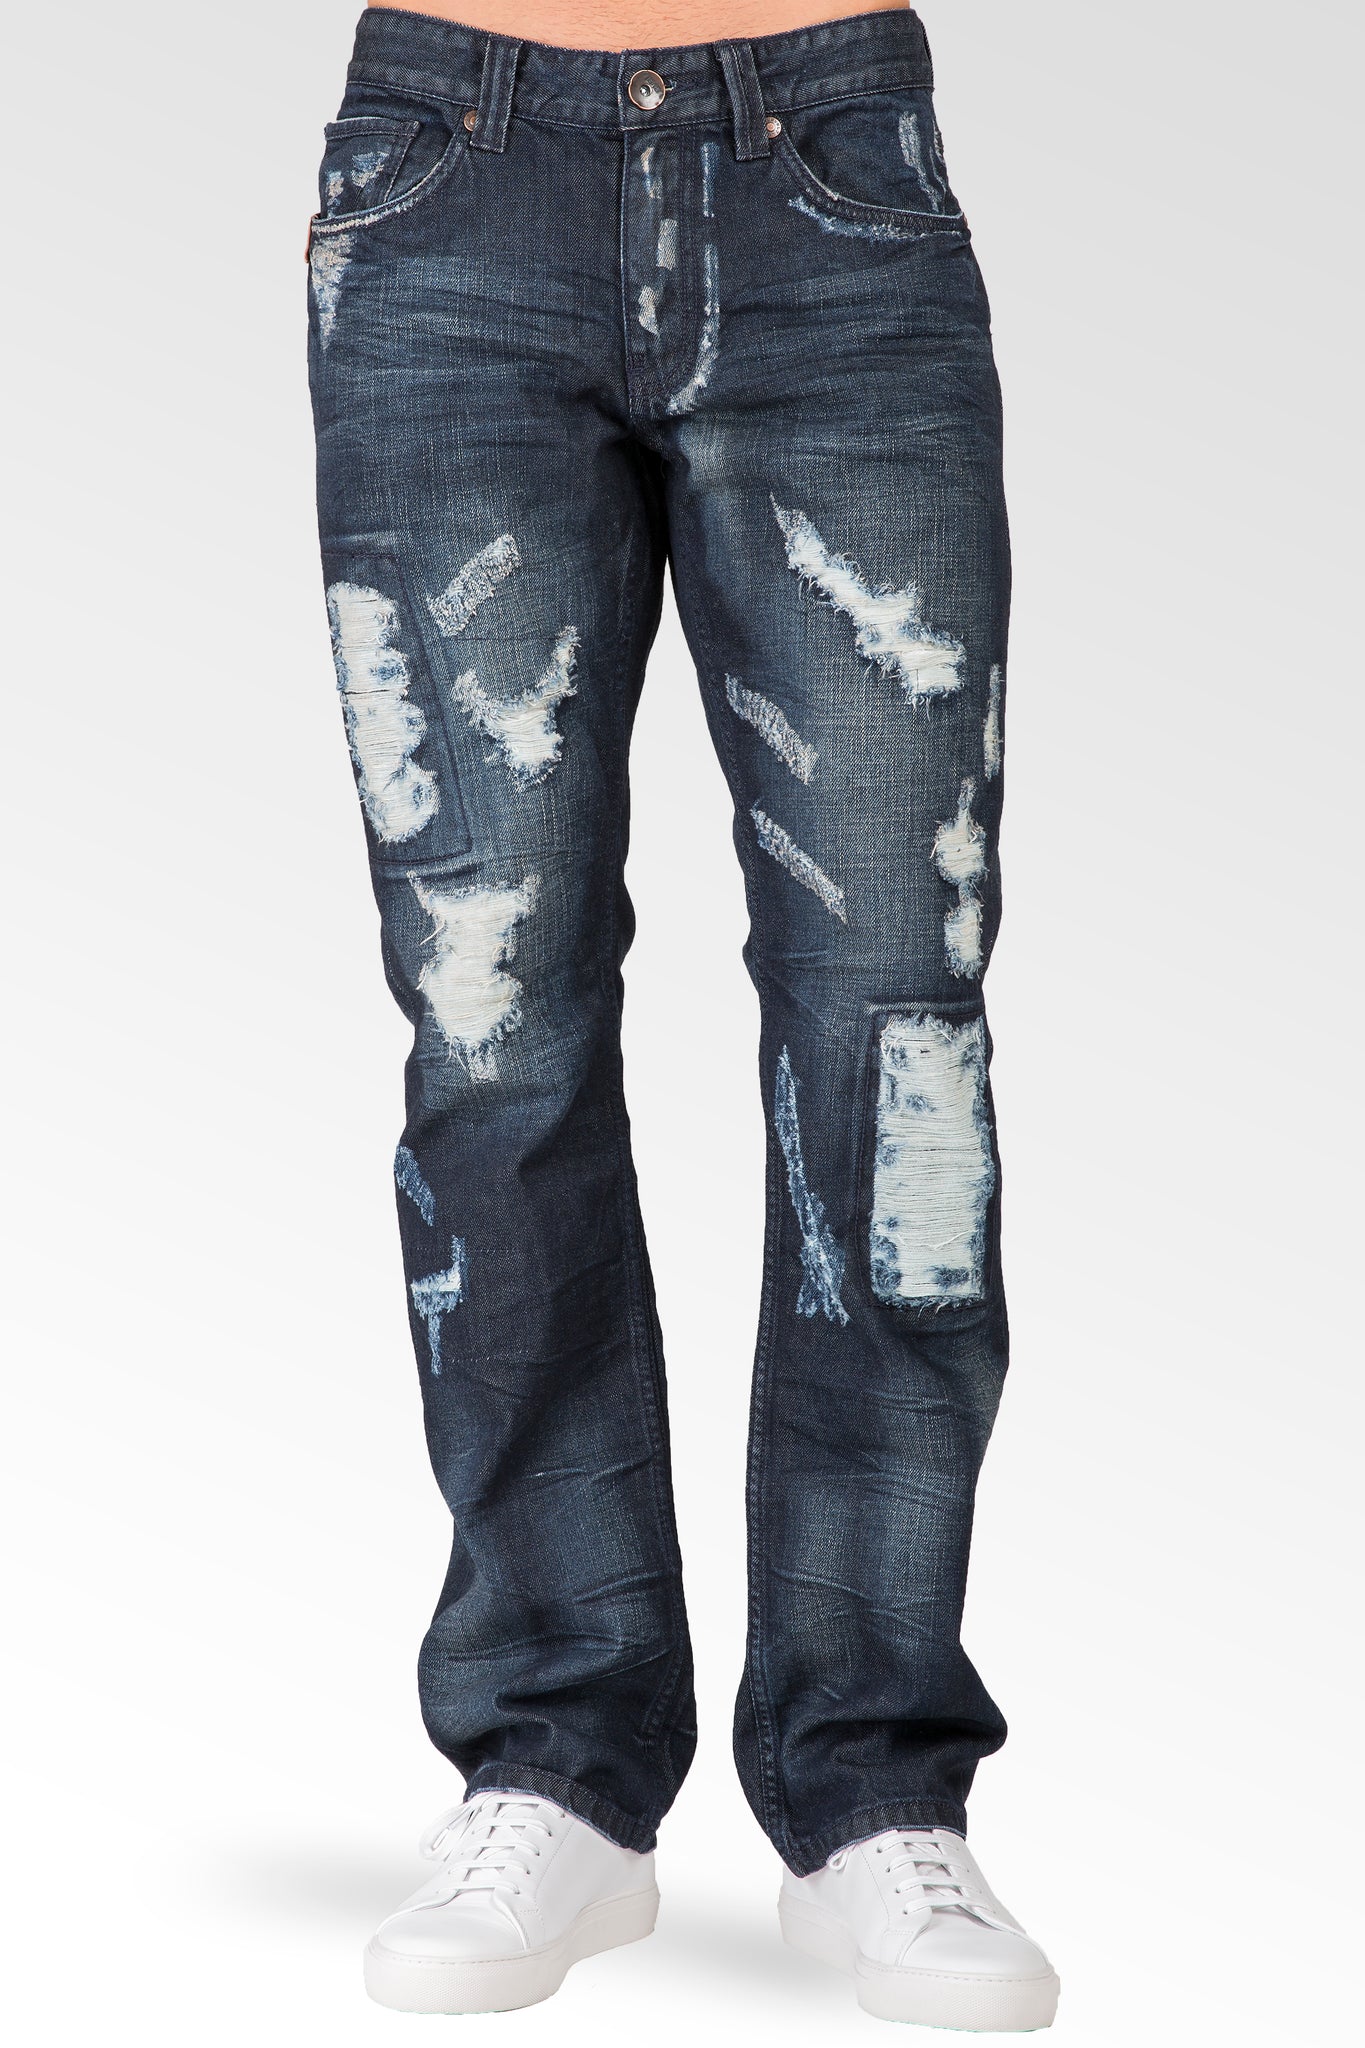 Slim Straight Dark Blue Indigo Premium Denim Signature 5 Pocket Jeans Destroyed & Repaired